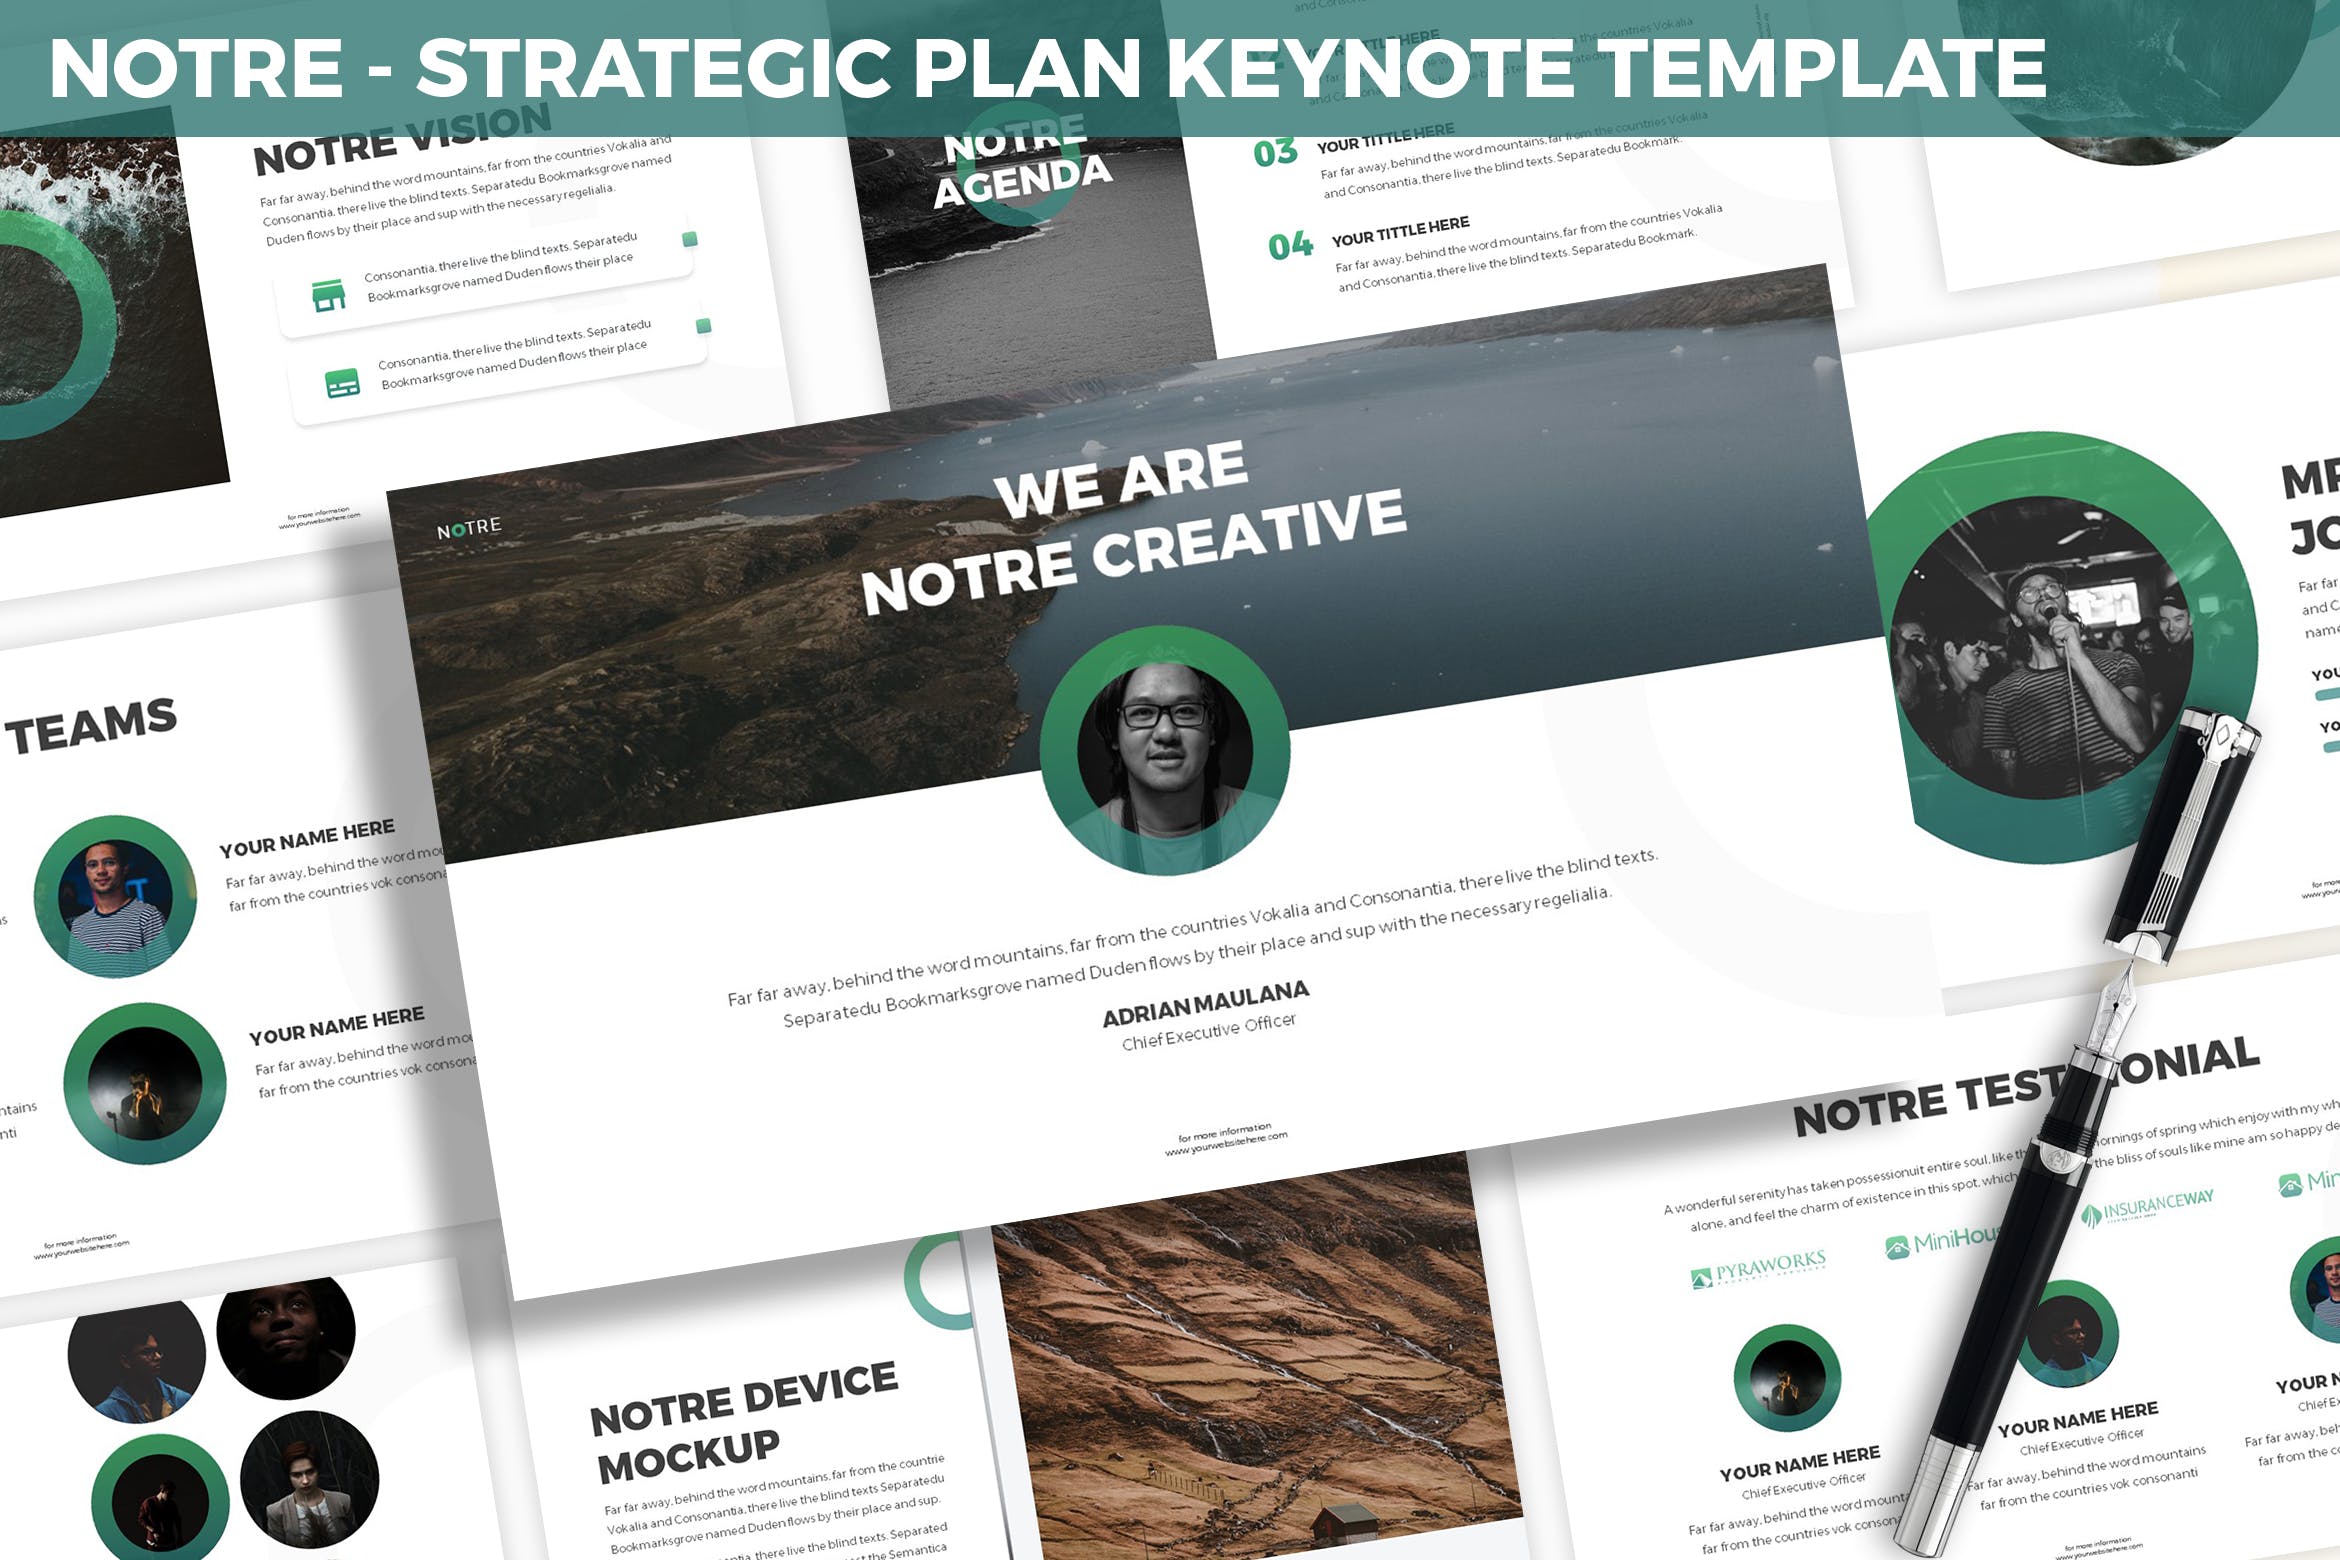 市场规划/项目计划主题16图库精选Keynote模板模板 Notre – Strategic Plan Keynote Template插图